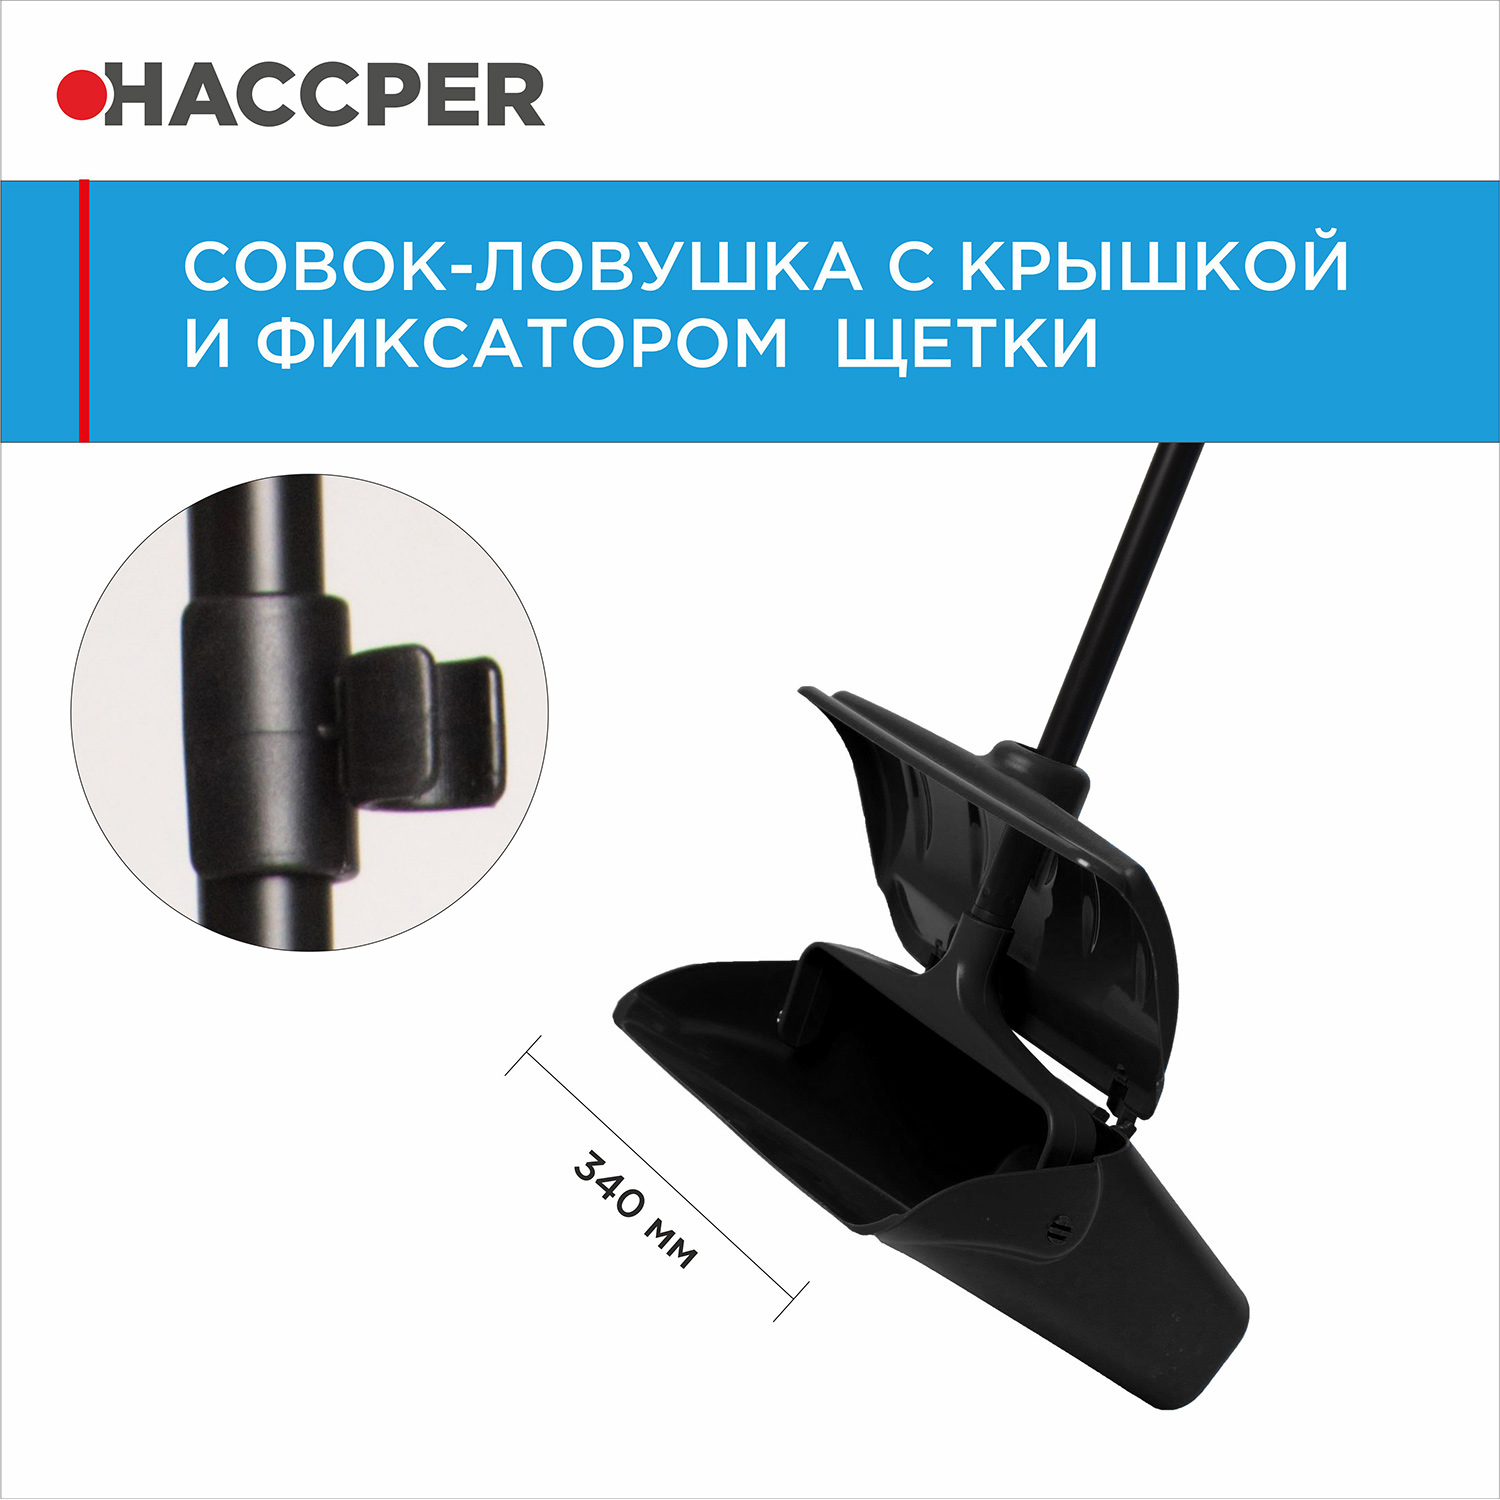 Совок-ловушка HACCPER с крышкой и фиксатором щетки, черный